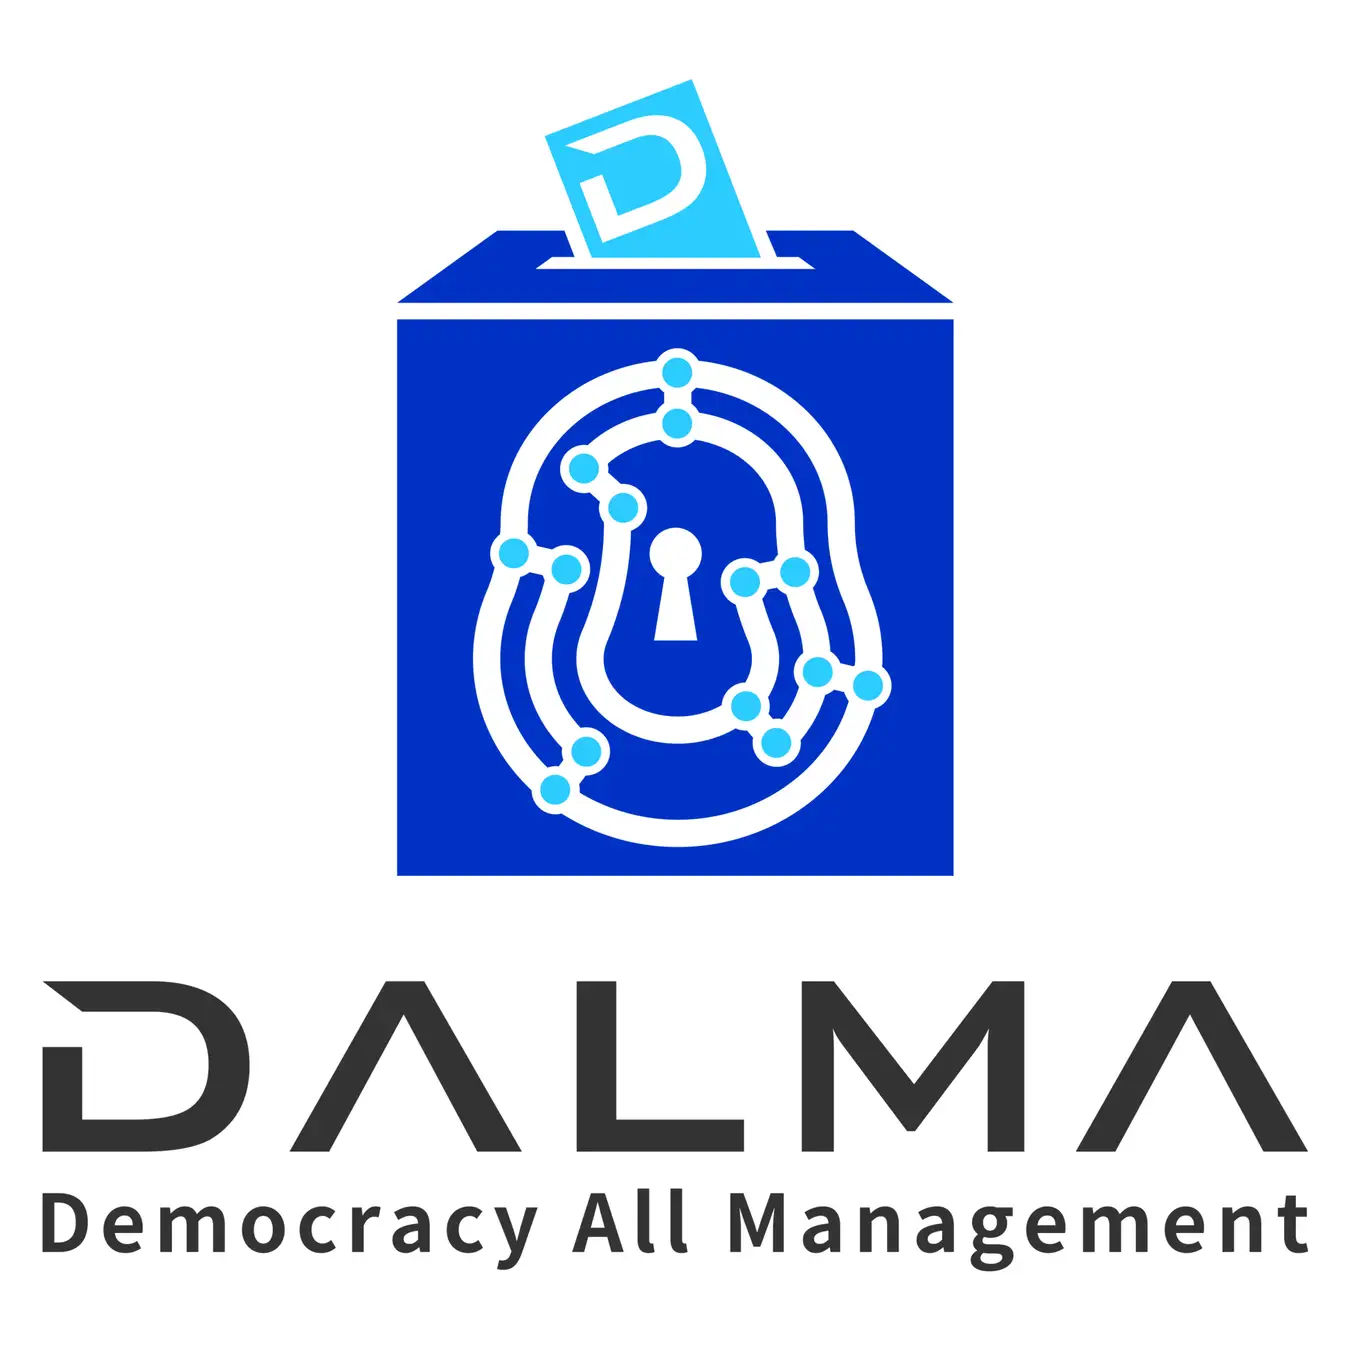 加賀市、インターネット投票システム「DALMA」による実証実験を推進 [ニュース]